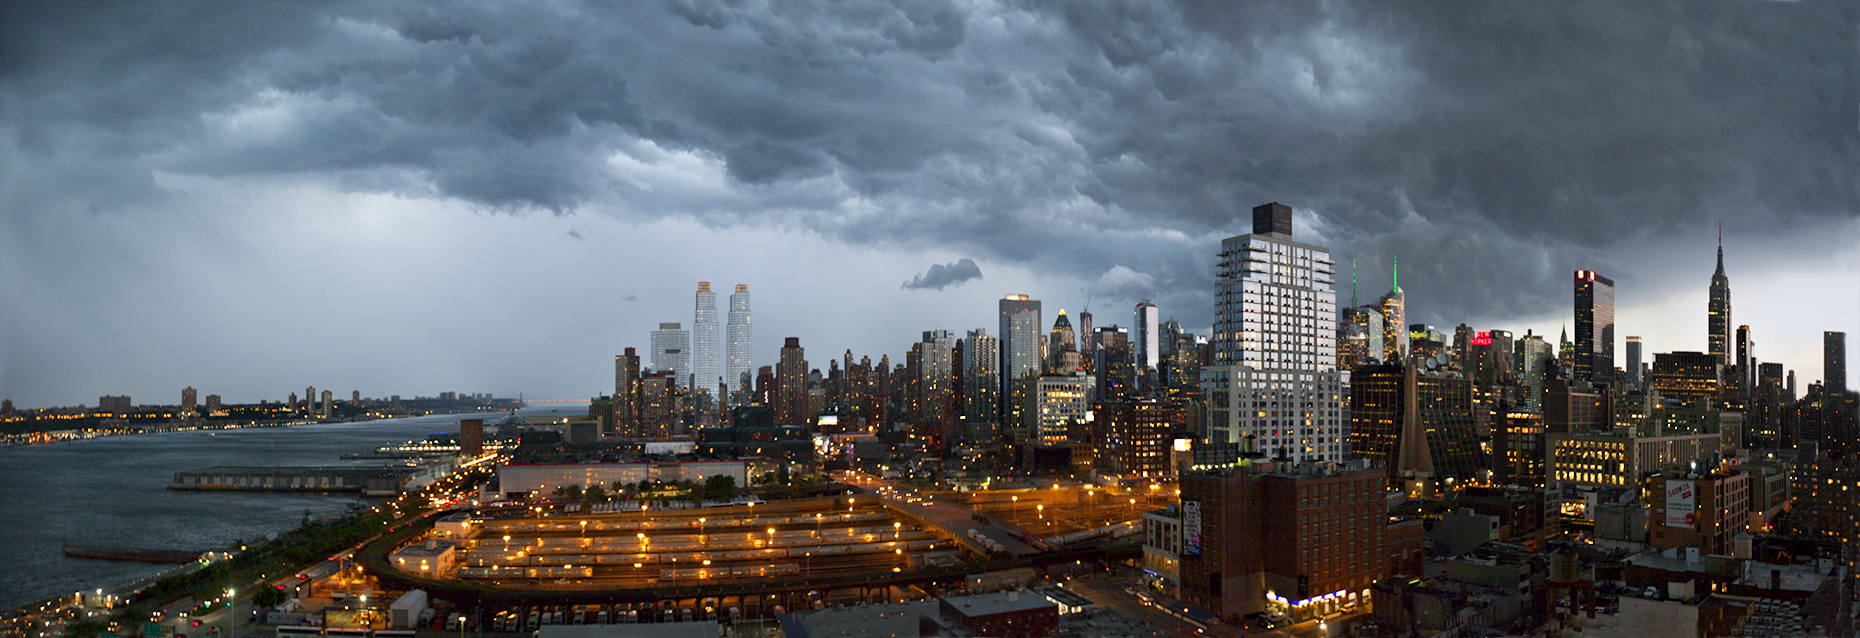 NY_panorama.jpg